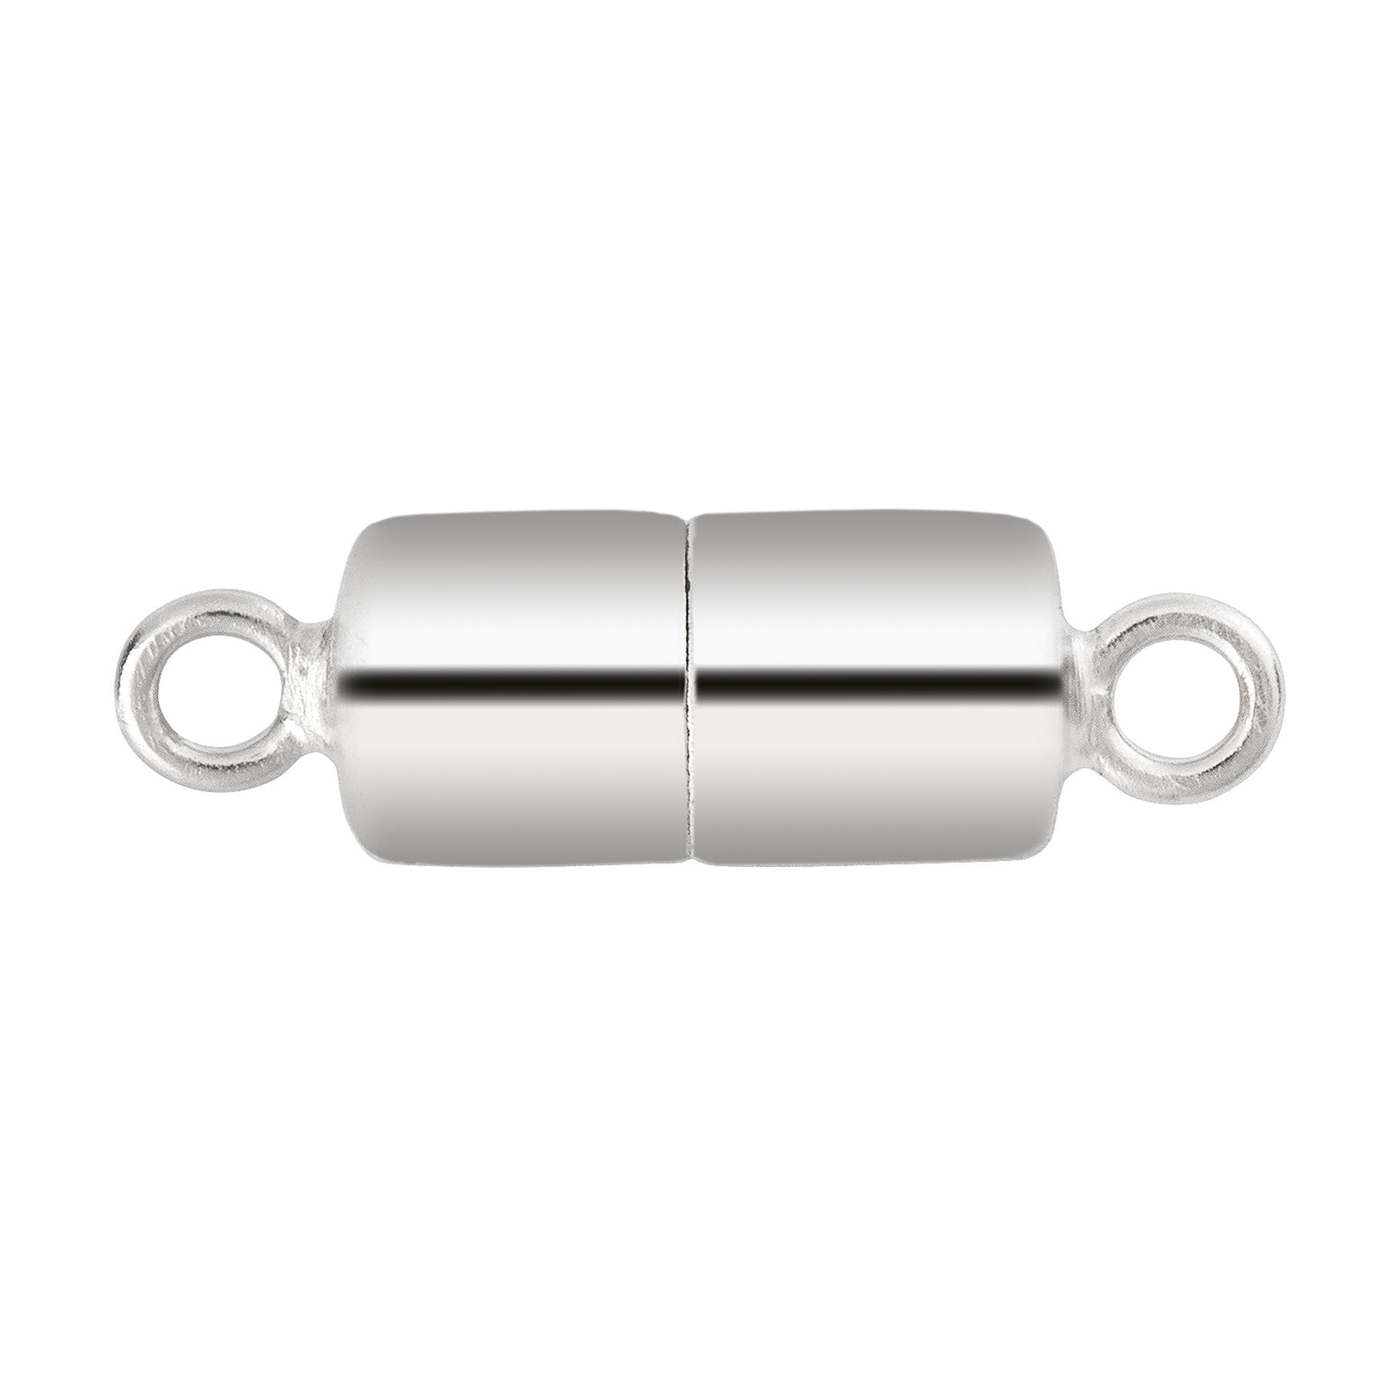 Magnetschließe, 925 Ag rhod., Zylinder, ø 10 mm, poliert - 1 Stück